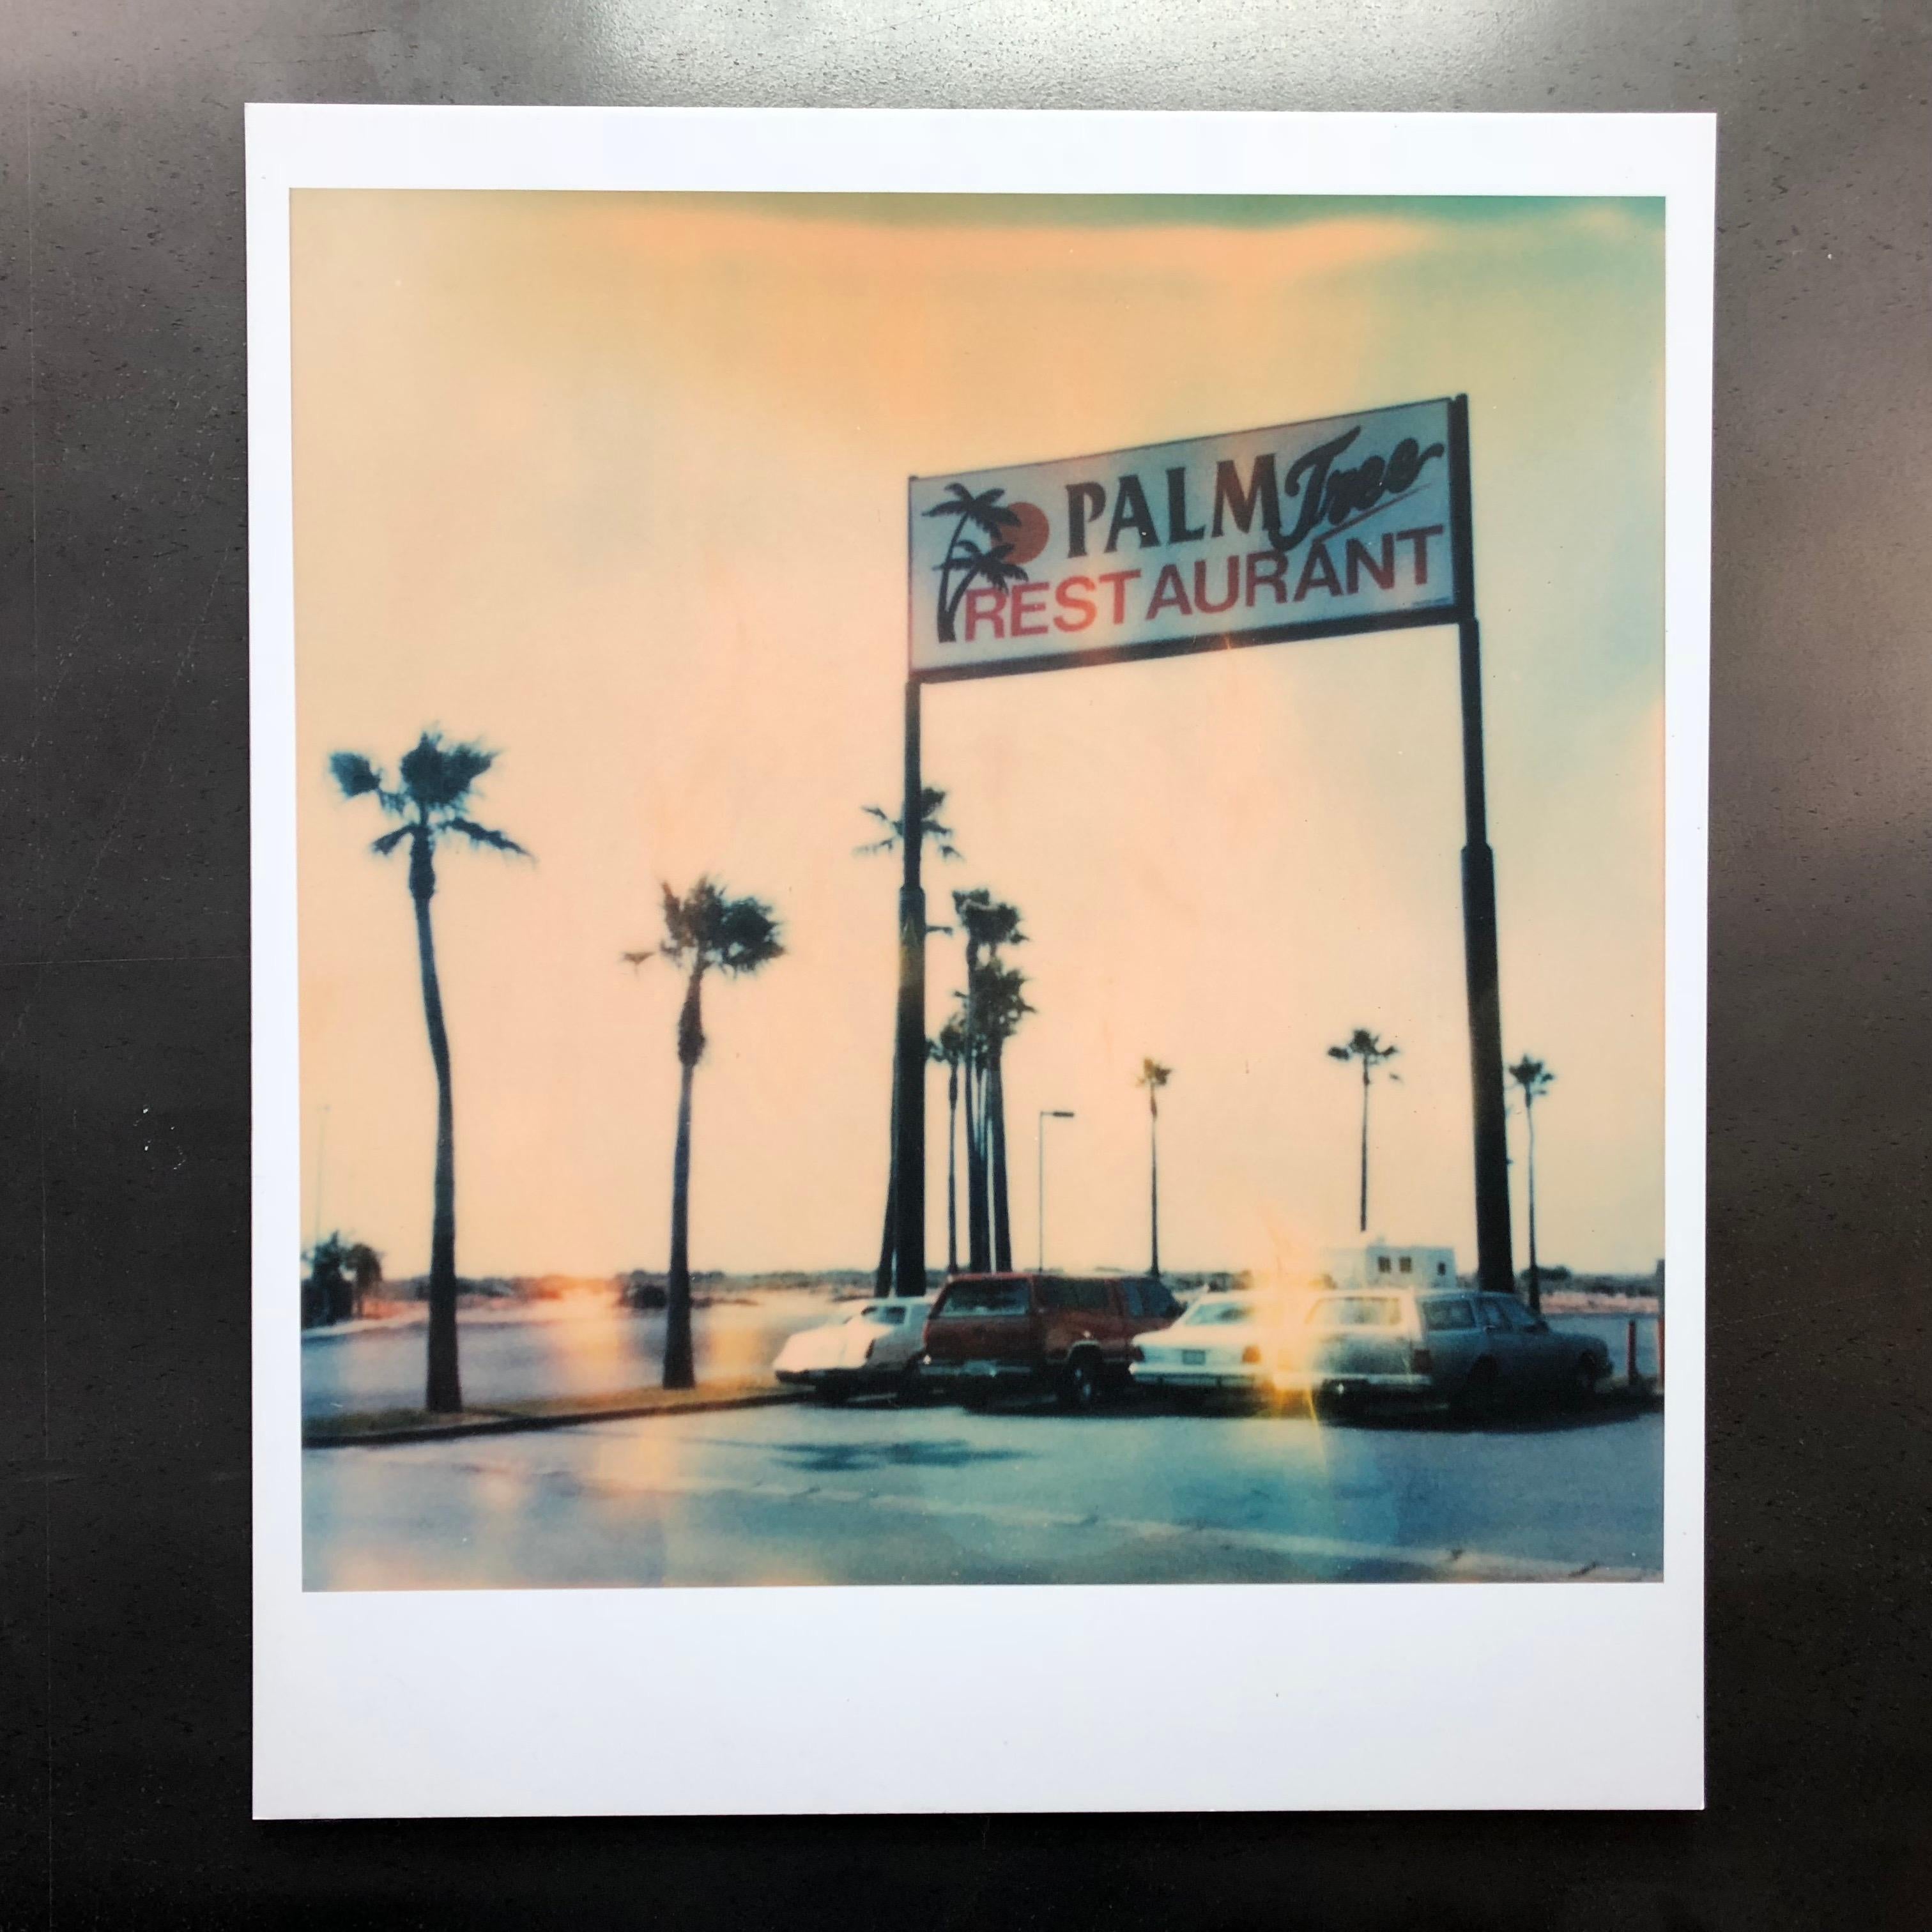 Stefanie Schneider Color Photograph - Palm Tree Restaurant (The Last Picture Show)